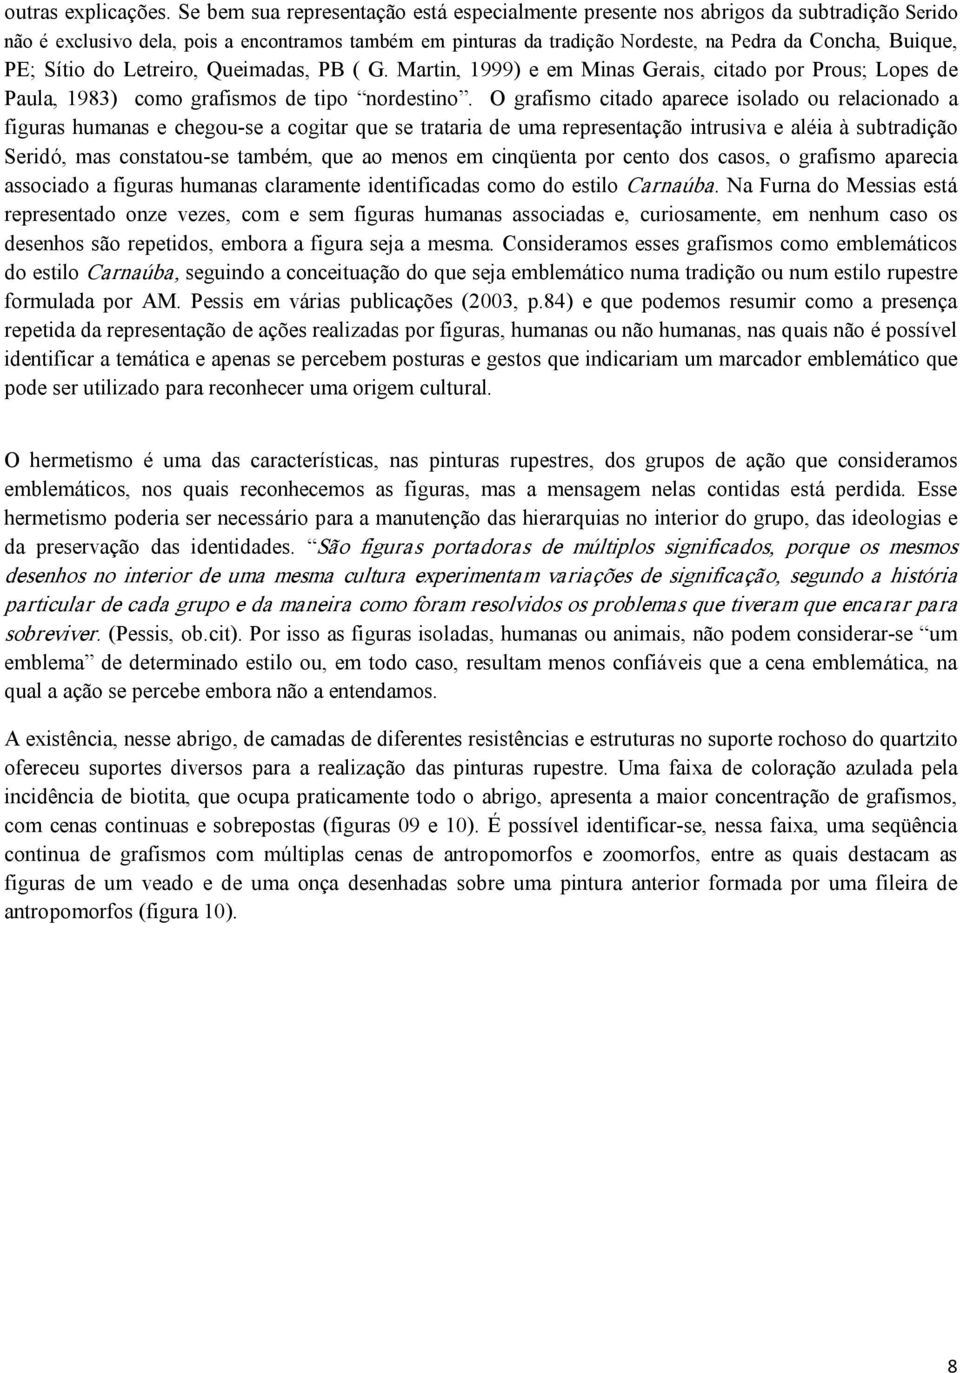 PE; Sítio do Letreiro, Queimadas, PB ( G. Martin, 1999) e em Minas Gerais, citado por Prous; Lopes de Paula, 1983) como grafismos de tipo nordestino.